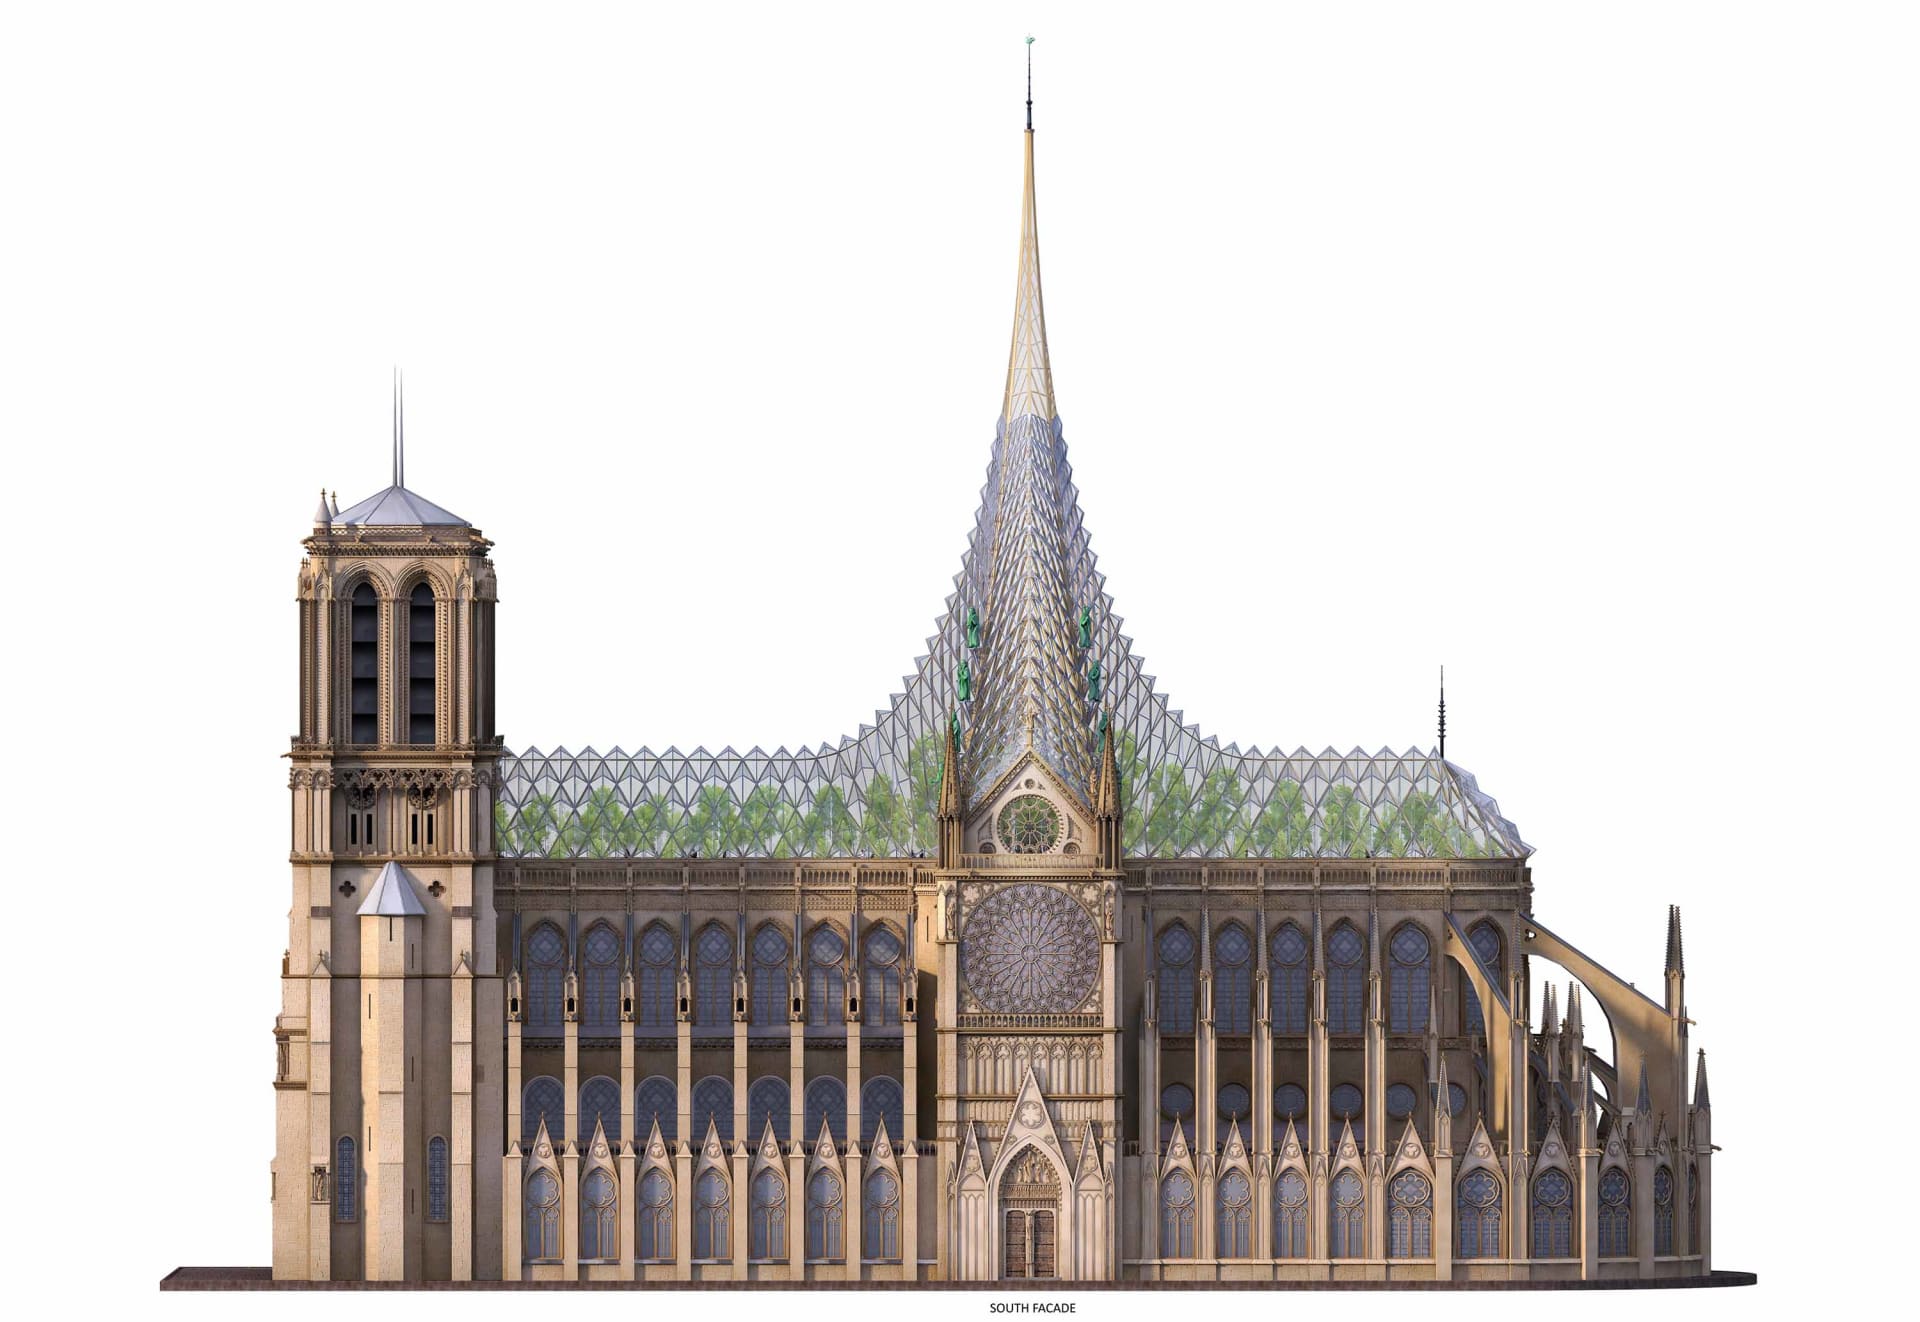 مهندس معماري يكشف عن تصميم صديق للبيئة لكاتدرائية نوتردام